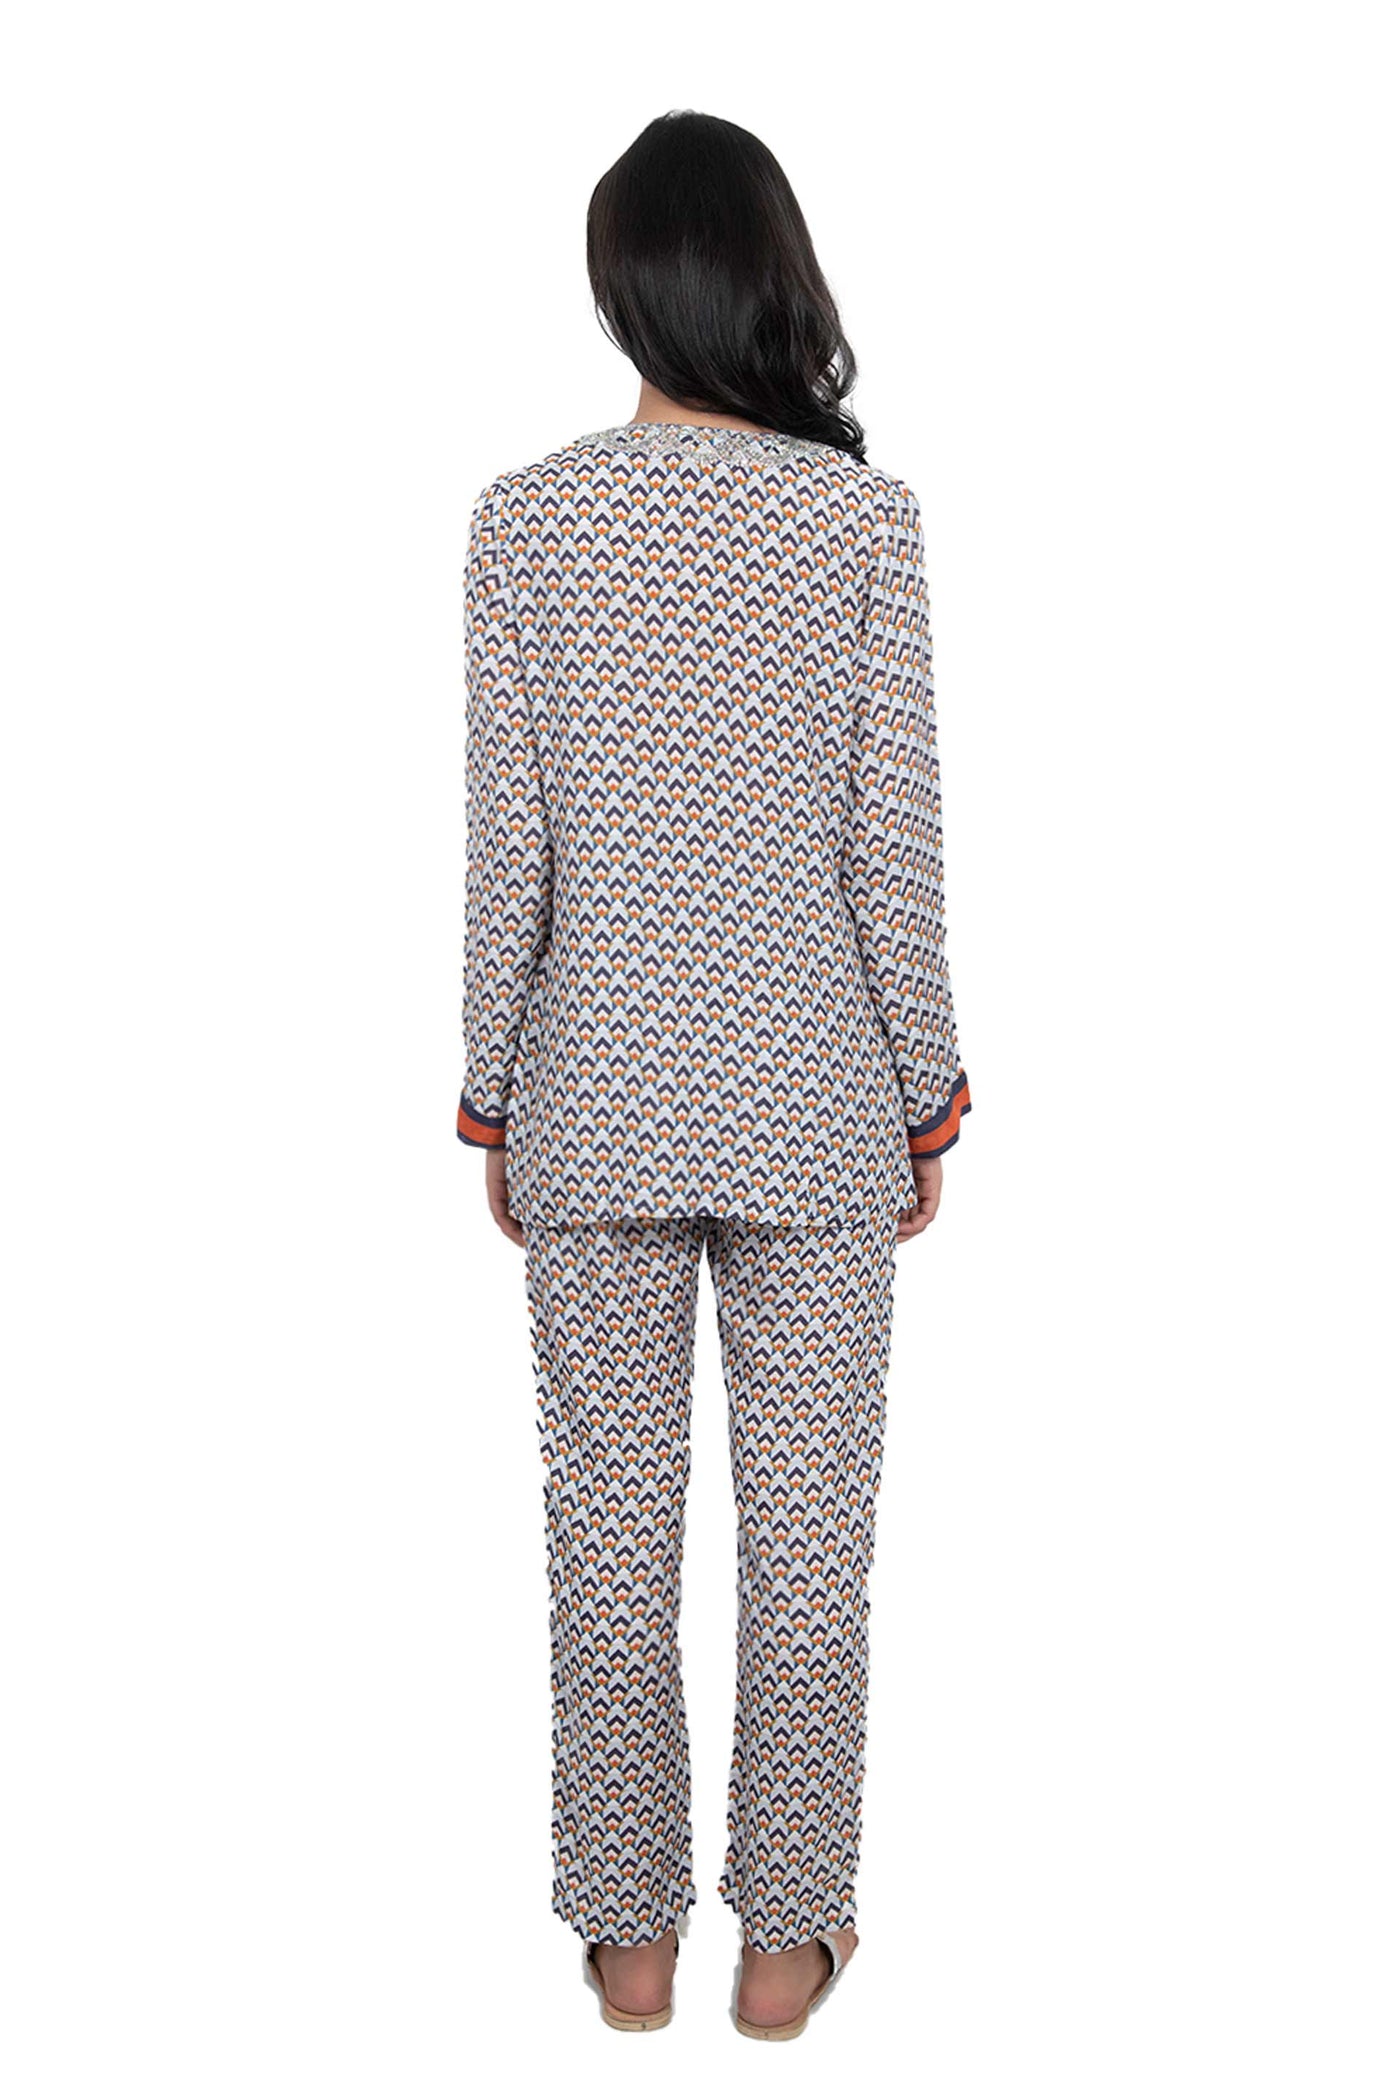 Monisha Jaising Geometric Set blue online shopping melange singapore indian designer wear